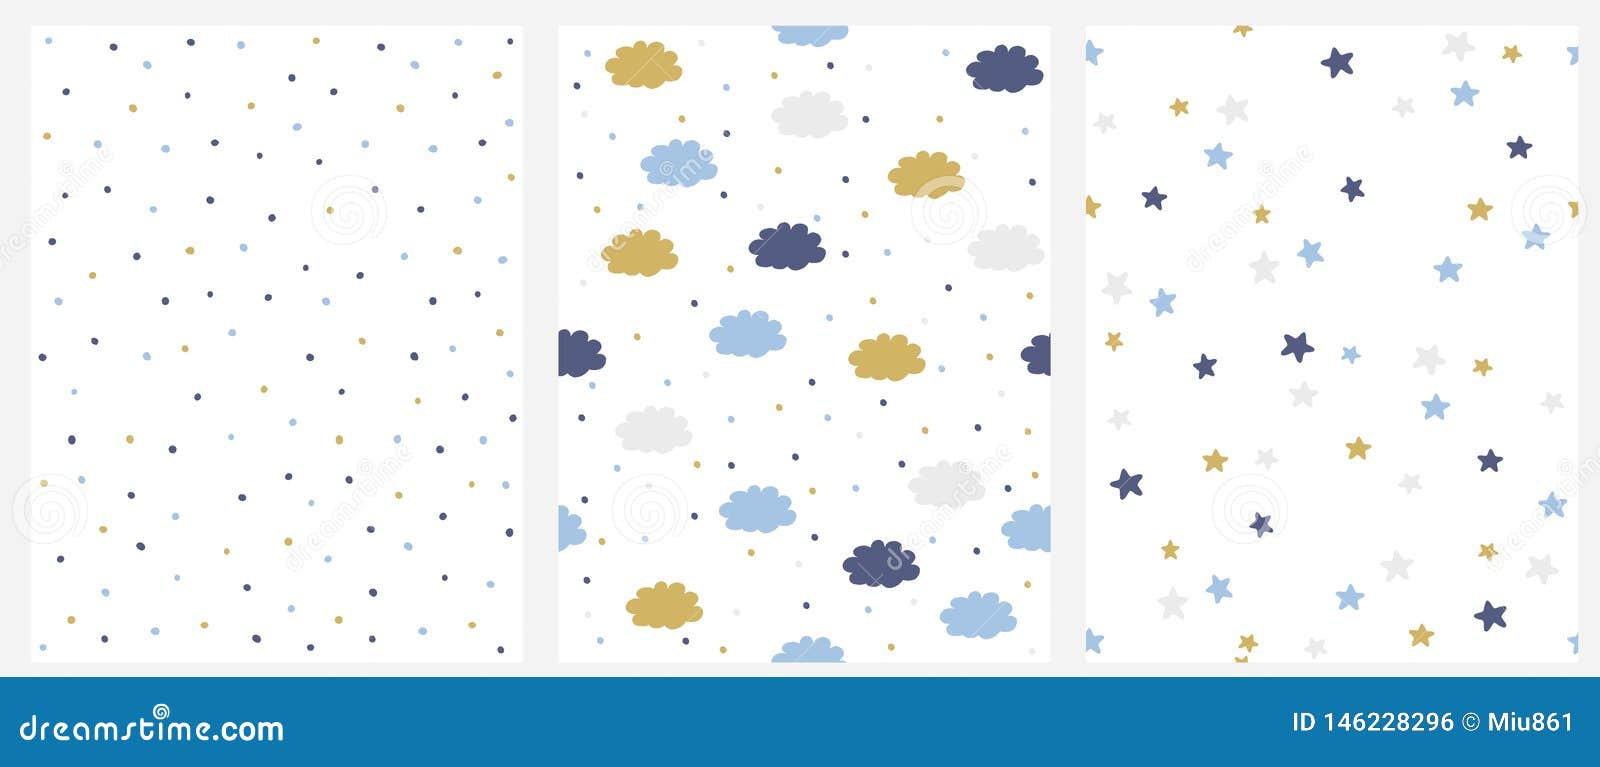 Fije de modelo inconsútil del vector 3 con el azul, oro y Gray Dots, las nubes y las estrellas aislados en un fondo blanco. Lovely Hand Drawn Nursery Art. Starry and Cloudy Sky Design.Simple Doted Vector Layout.